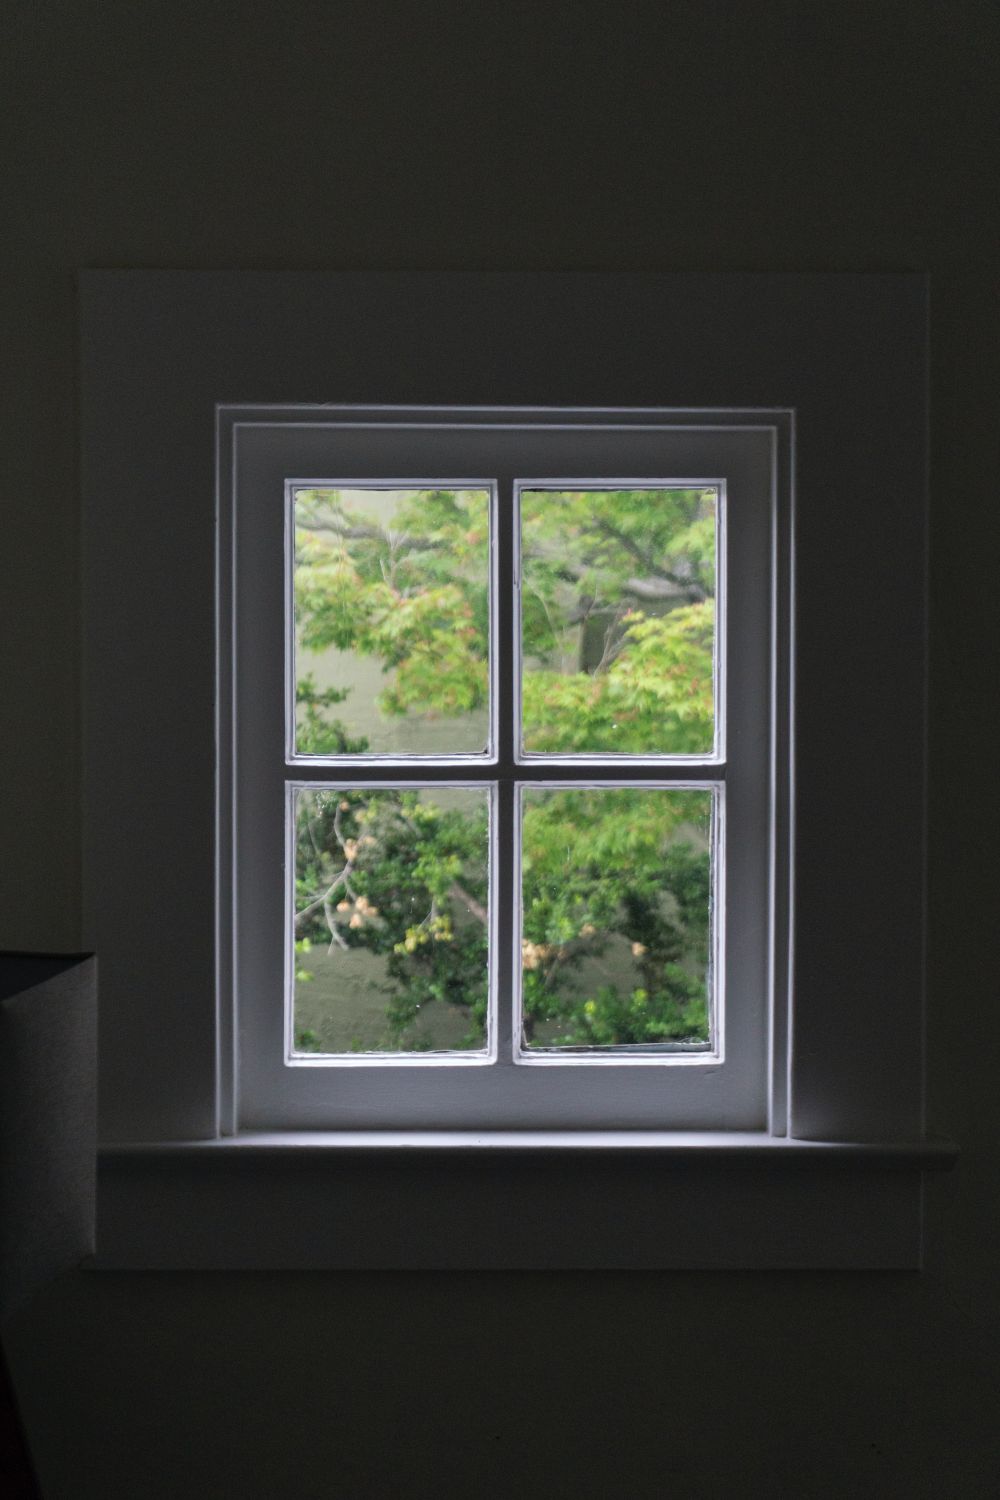 Køb nye vinduer og se, hvordan din varmeregning bliver mindre